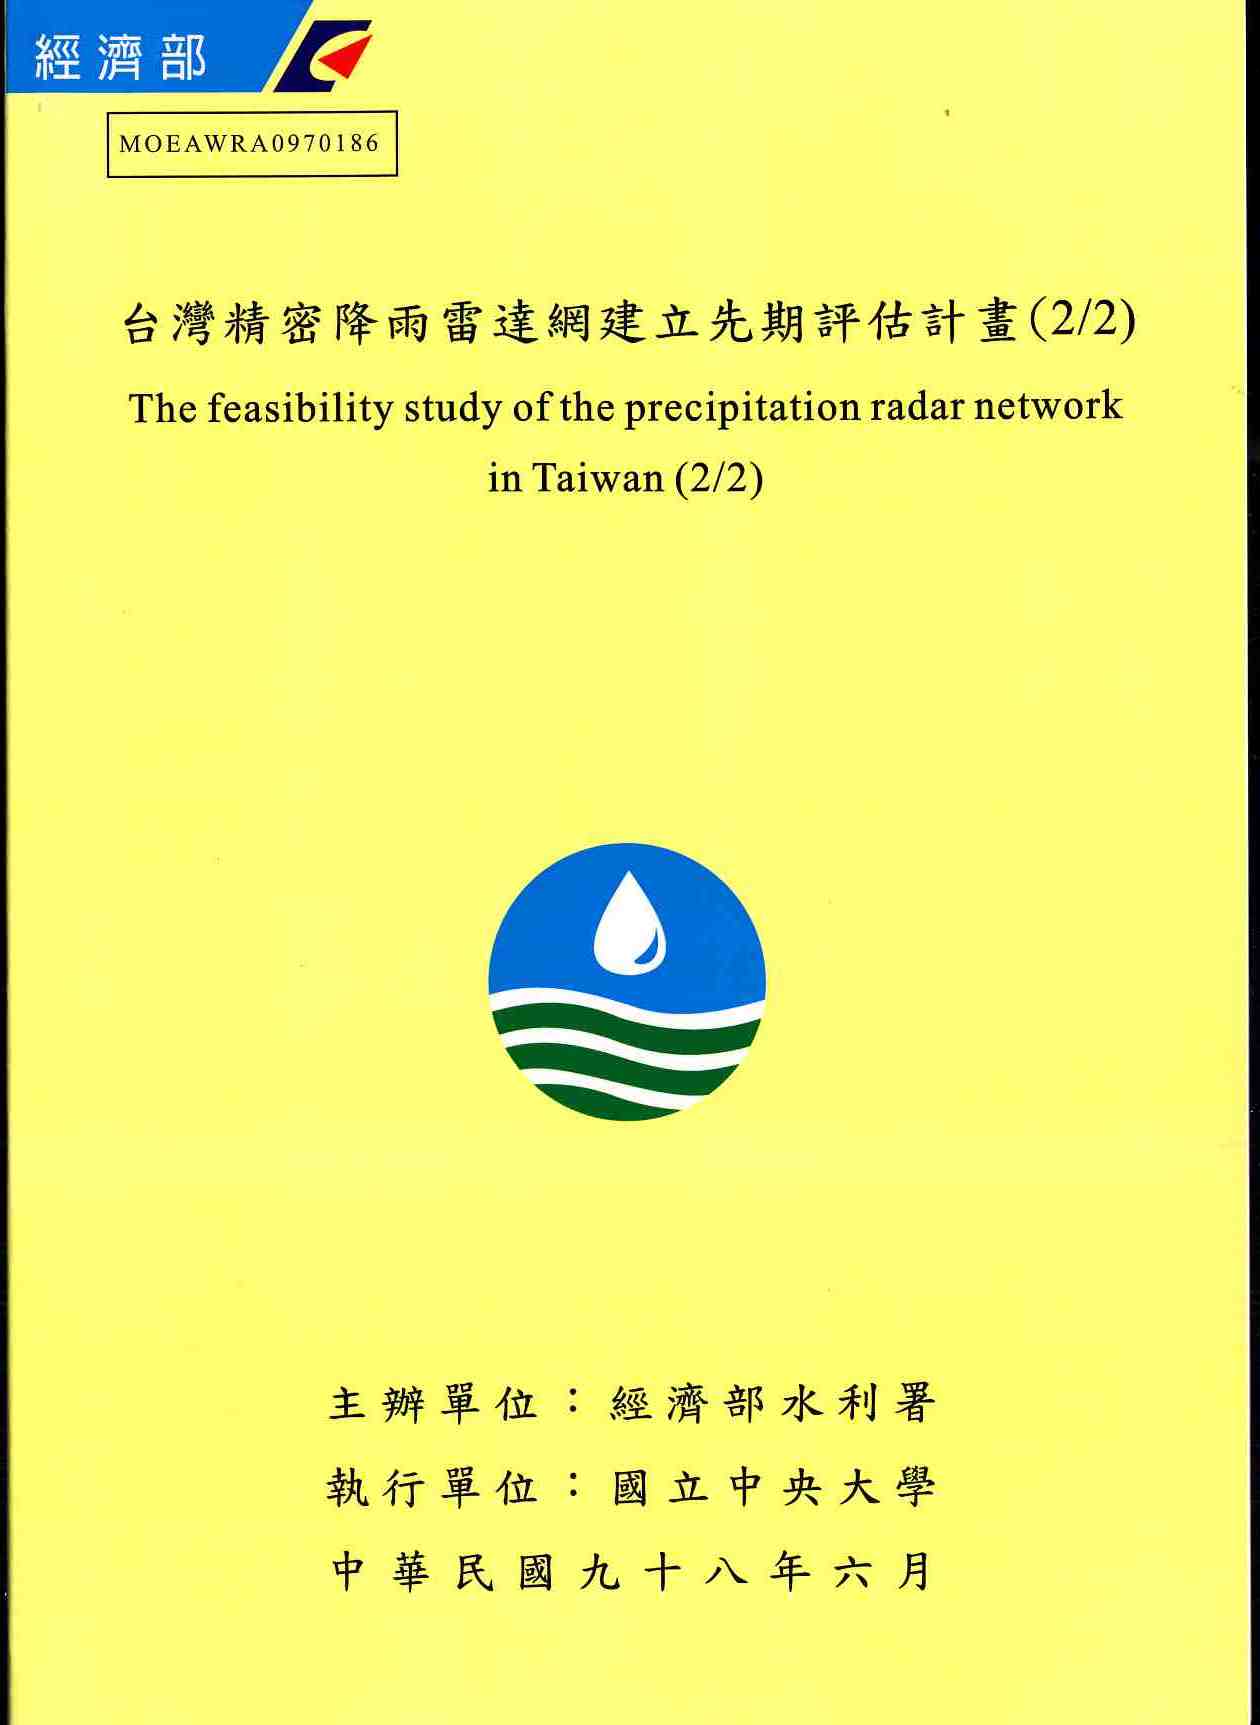 台灣精密降雨雷達網建立先期評估計畫(2/2)